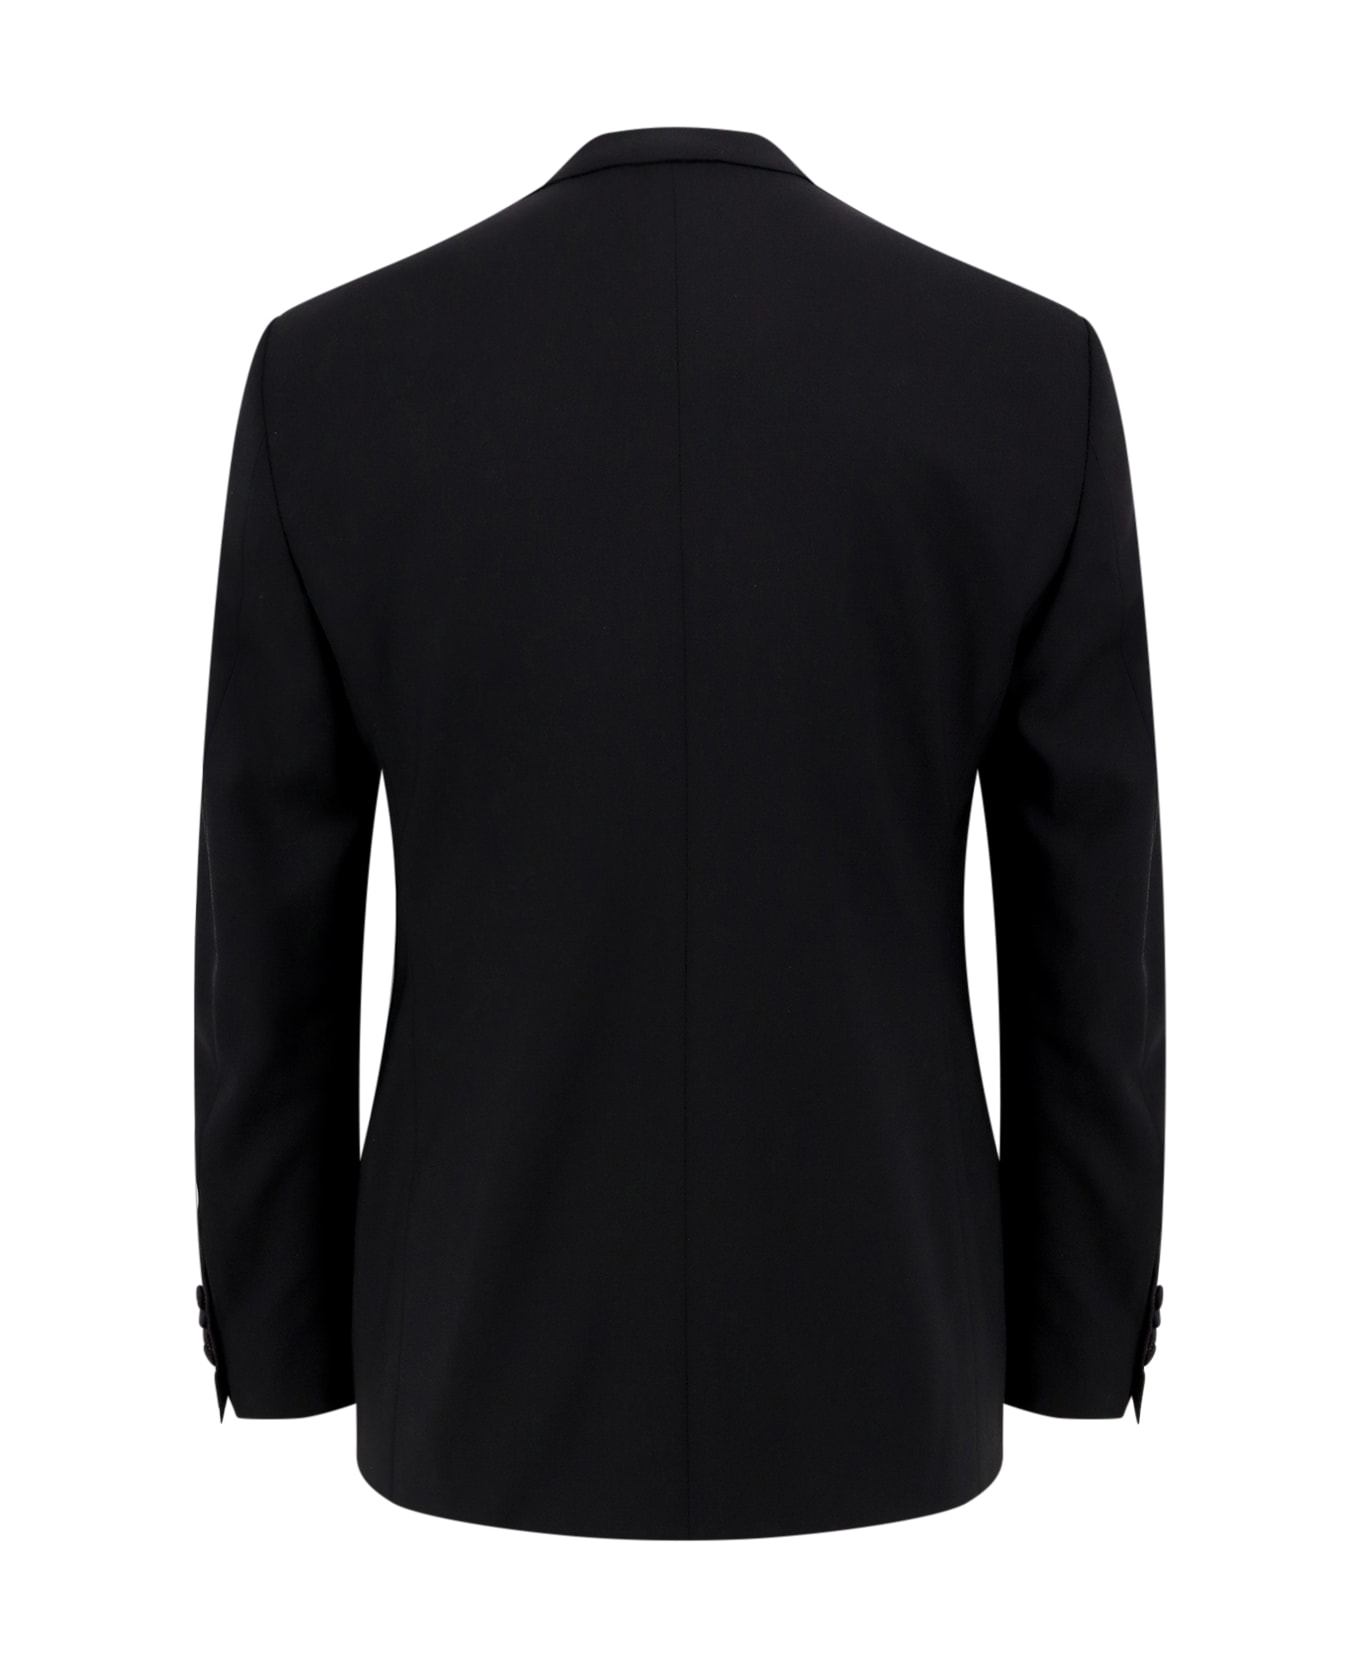 Giorgio Armani Tuxedo - Black スーツ